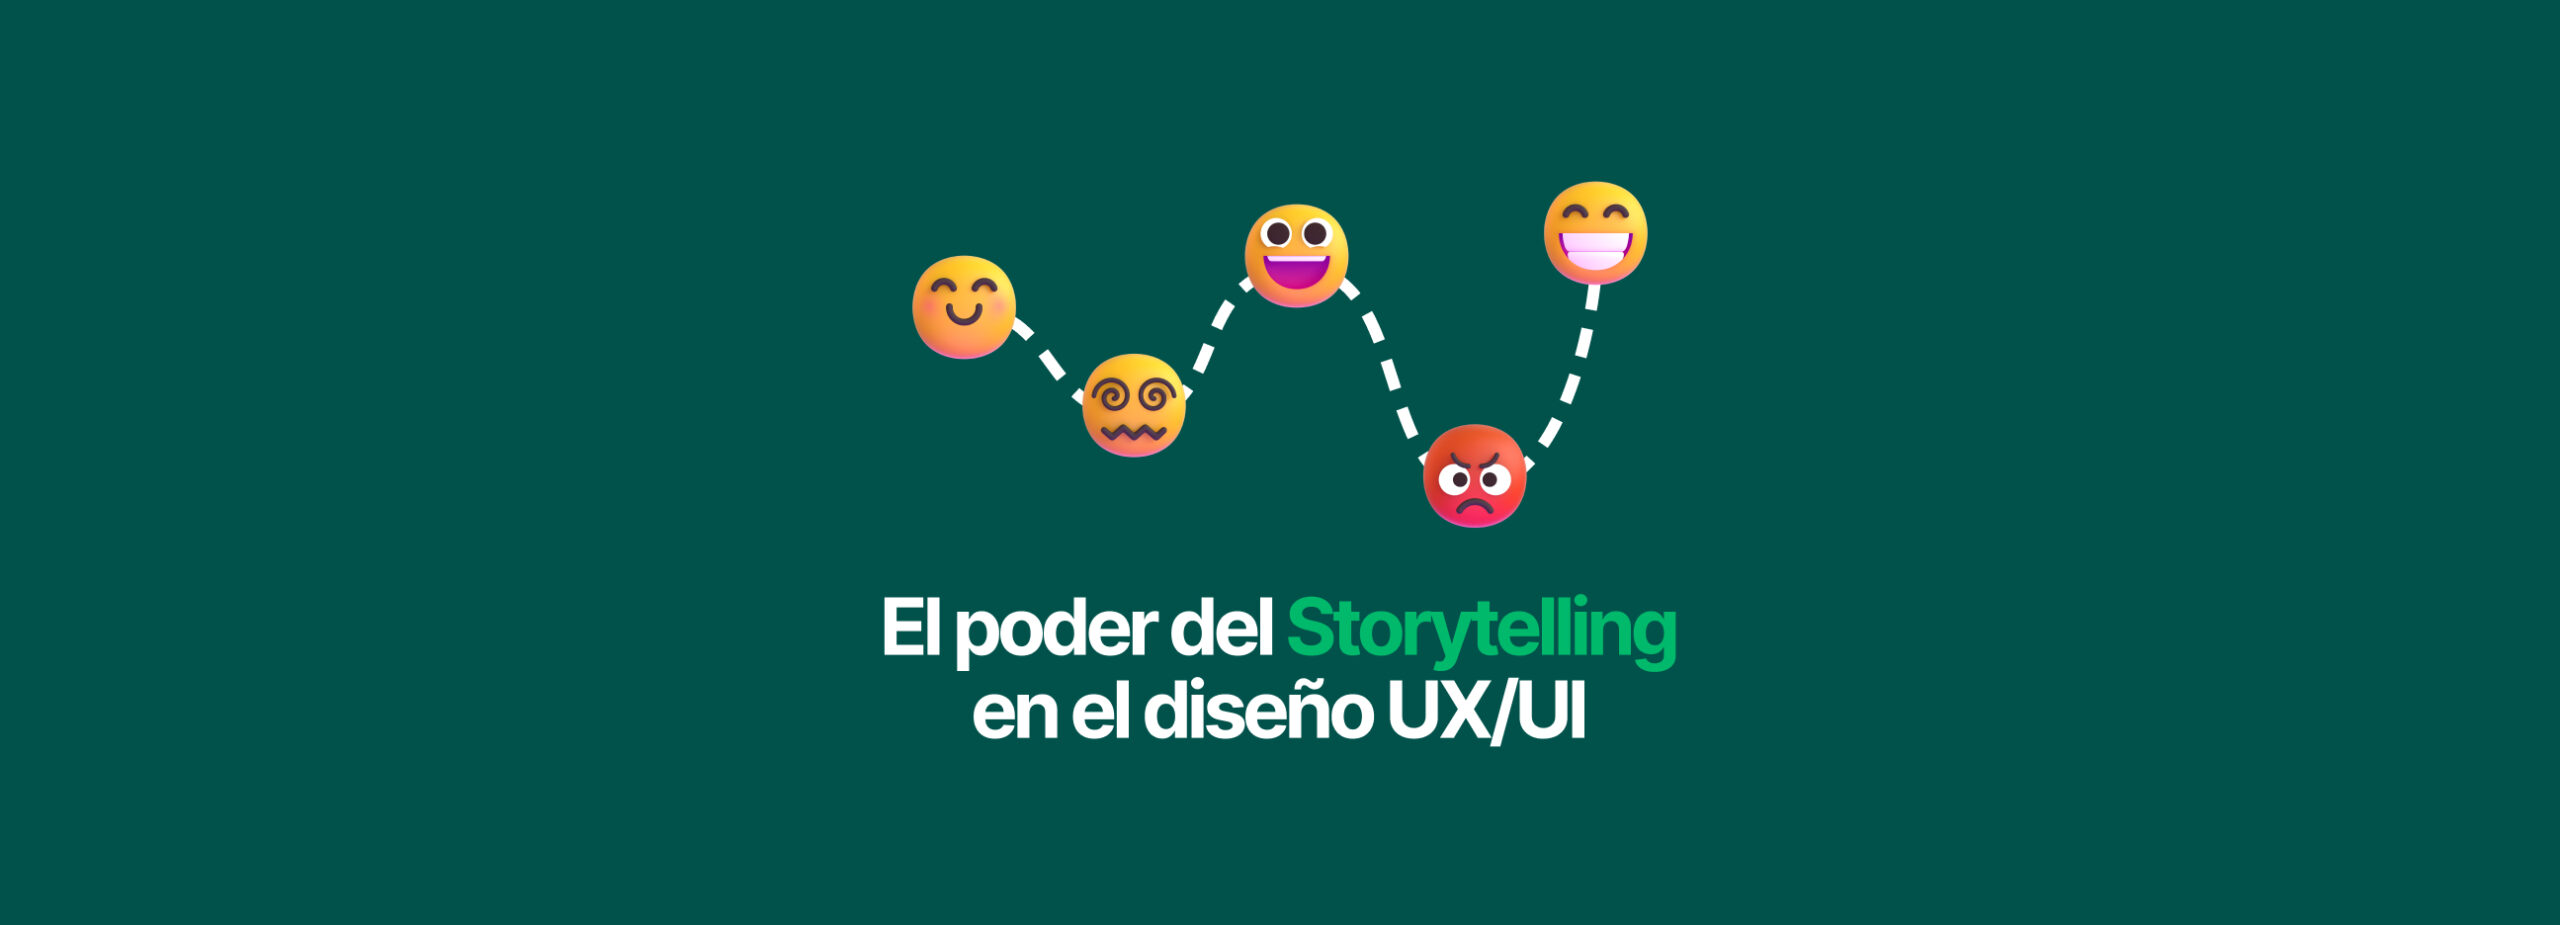 El poder del storytelling en el diseño UX/UI: Una herramienta para la creación de interfaces atractivas y memorables